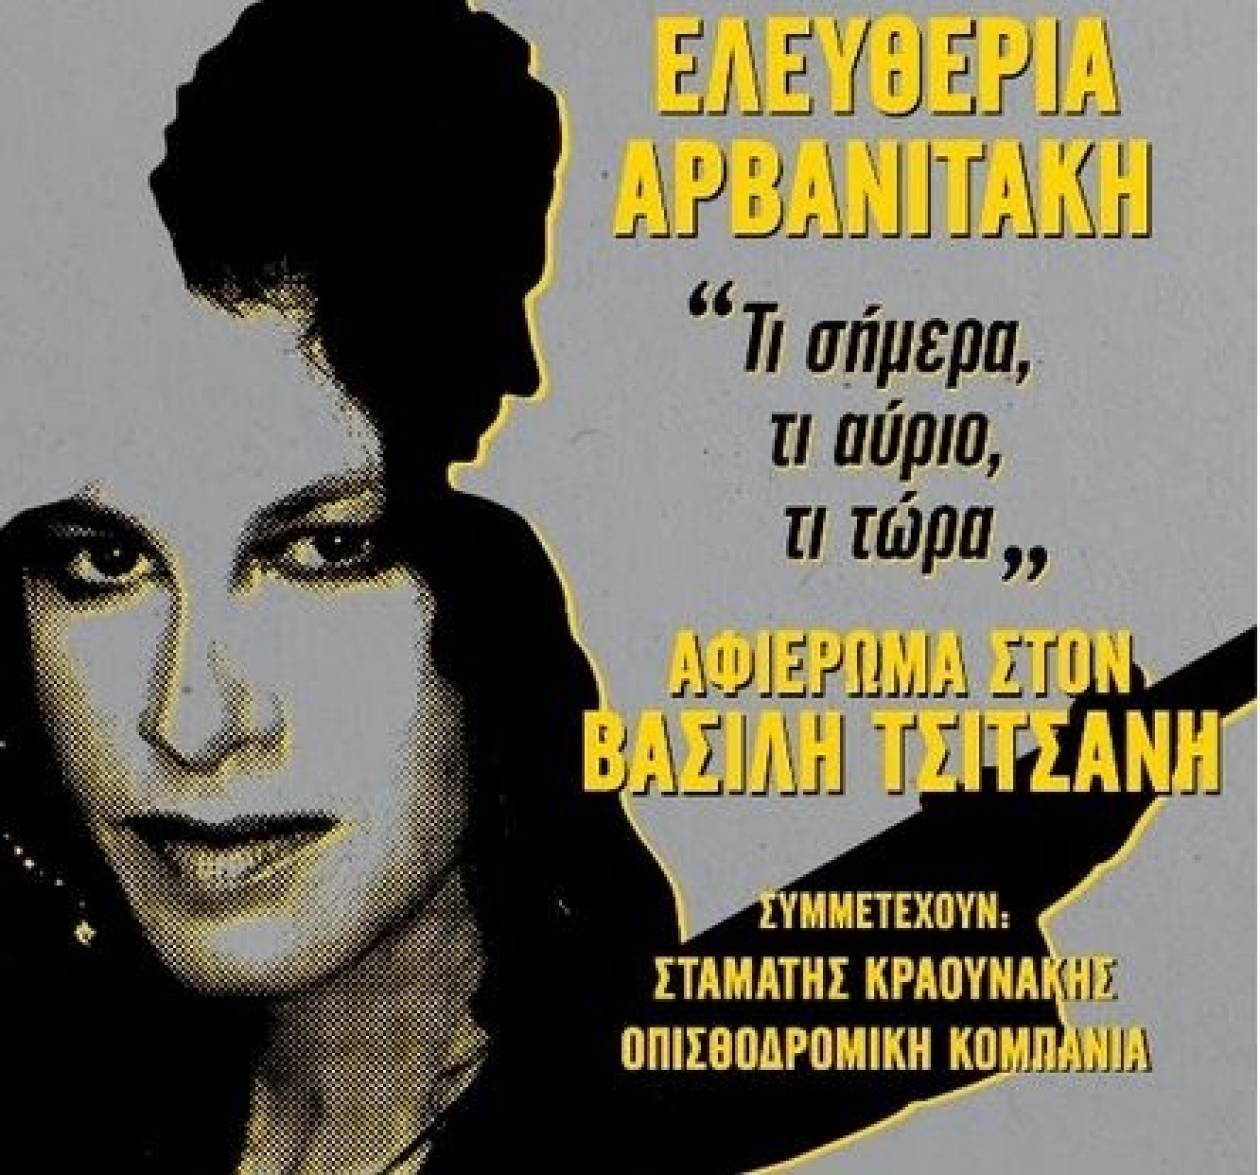 Η Ελευθερία Αρβανιτάκη στο Ηρώδειο: «Τι σήμερα, τι αύριο, τι τώρα»